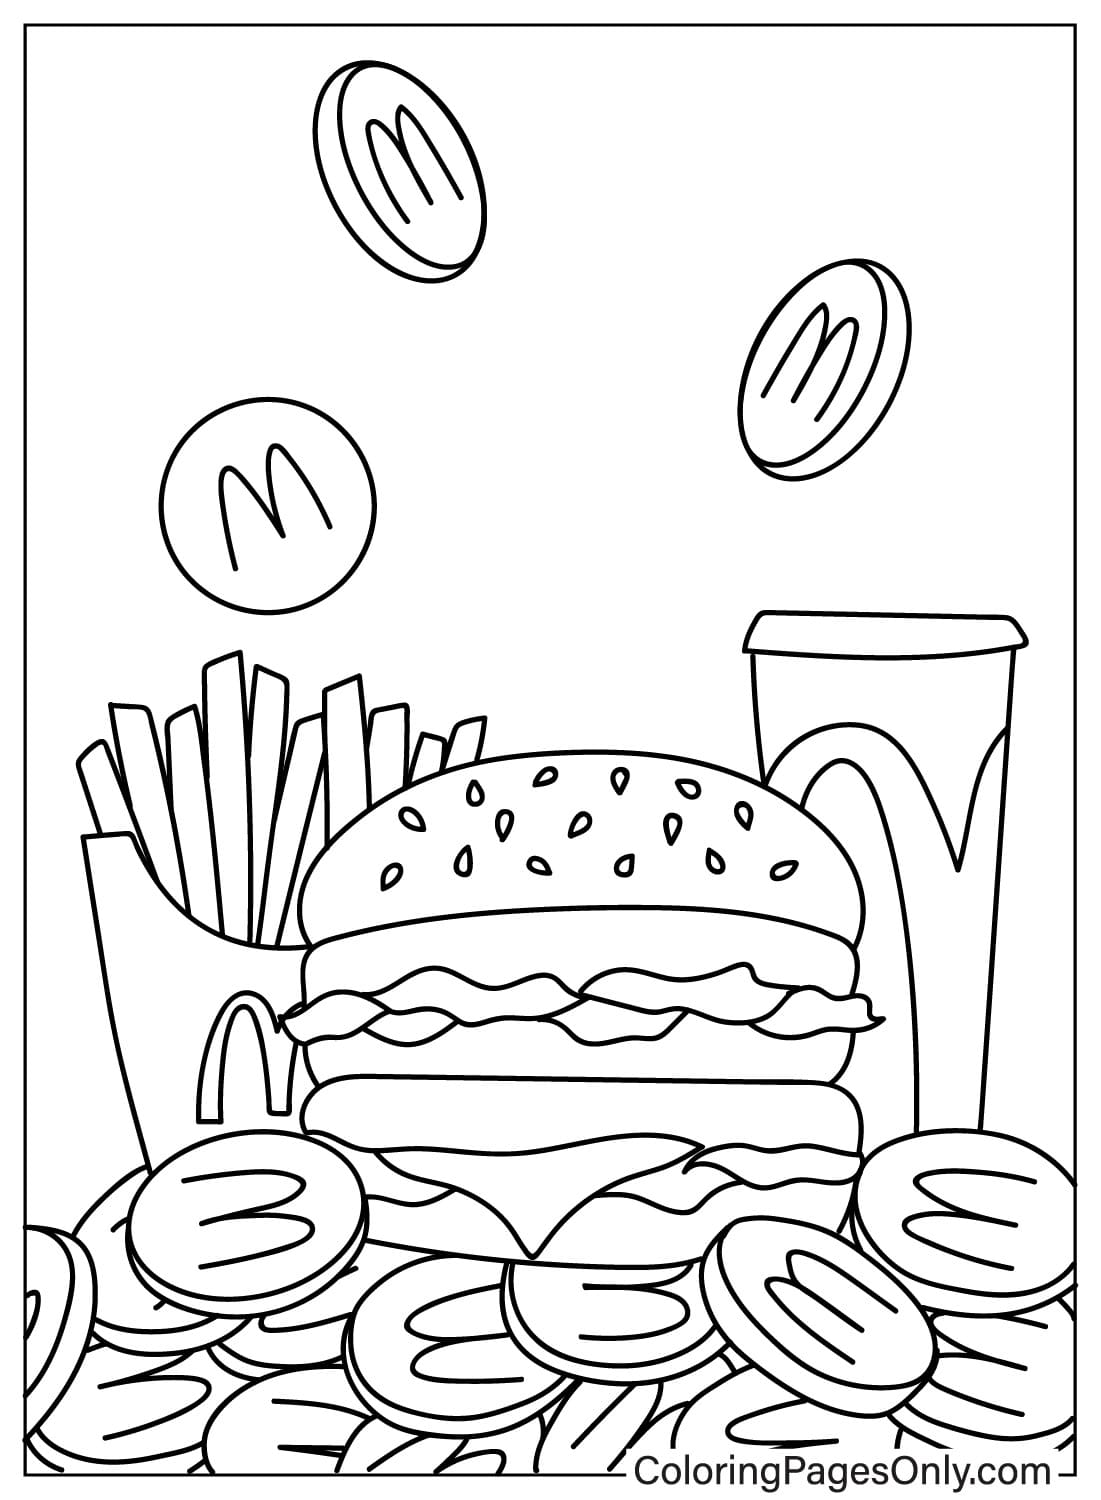 Imagem do McDonalds para colorir do McDonald's